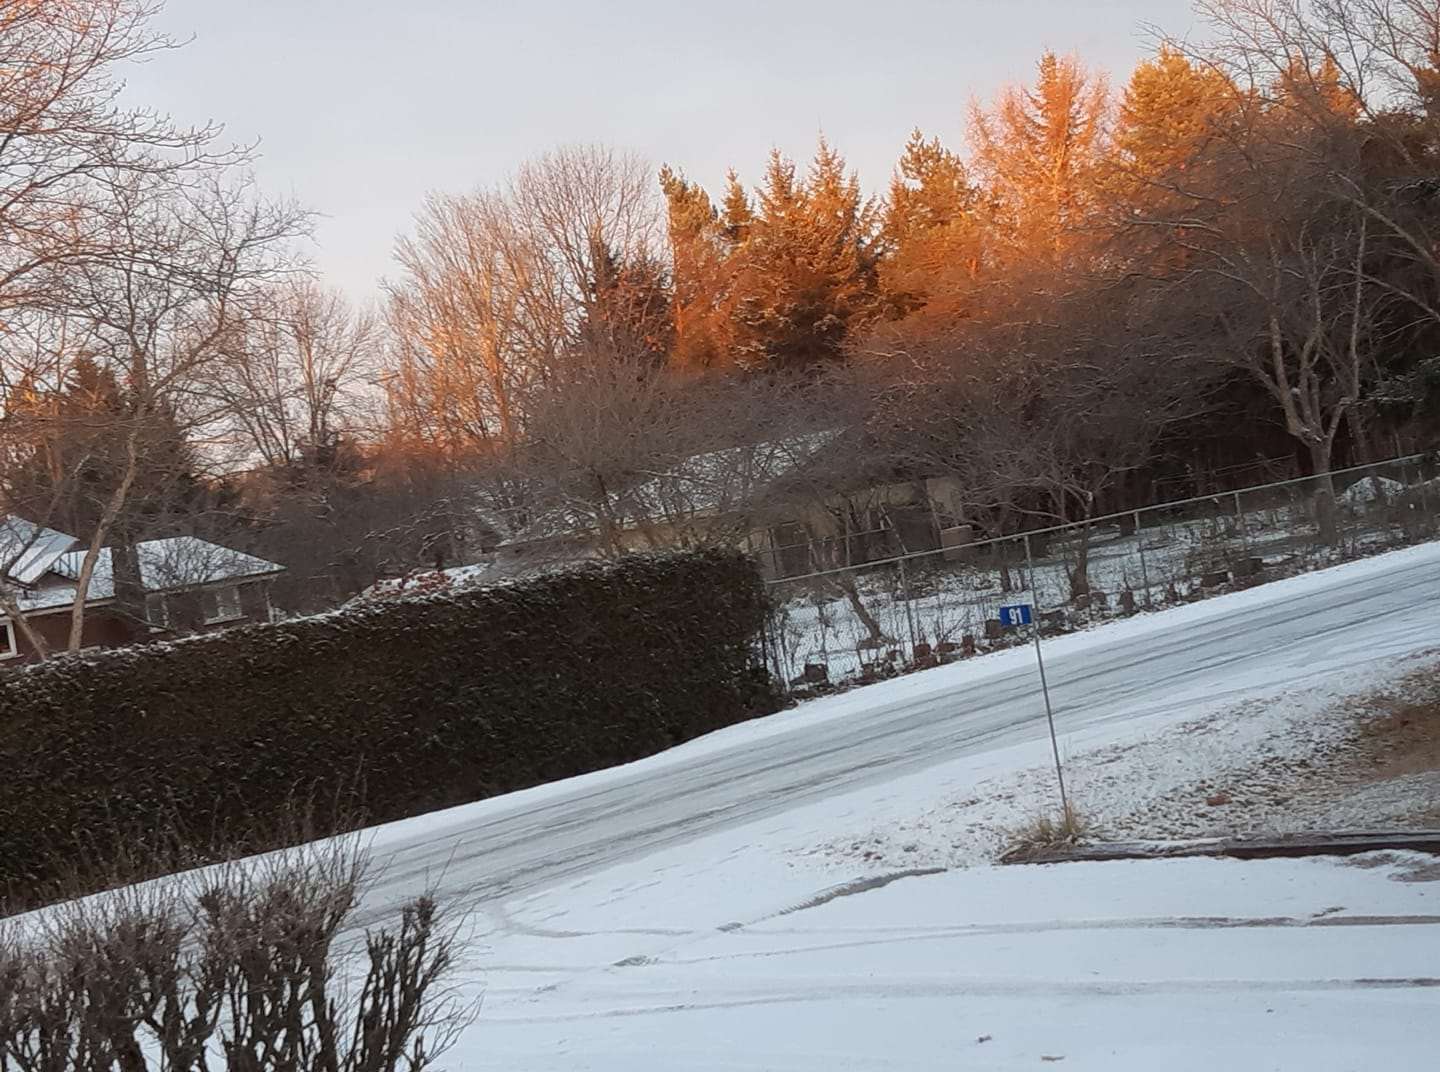 Une image contenant arbre, neige, extérieur, nature

Description générée automatiquement